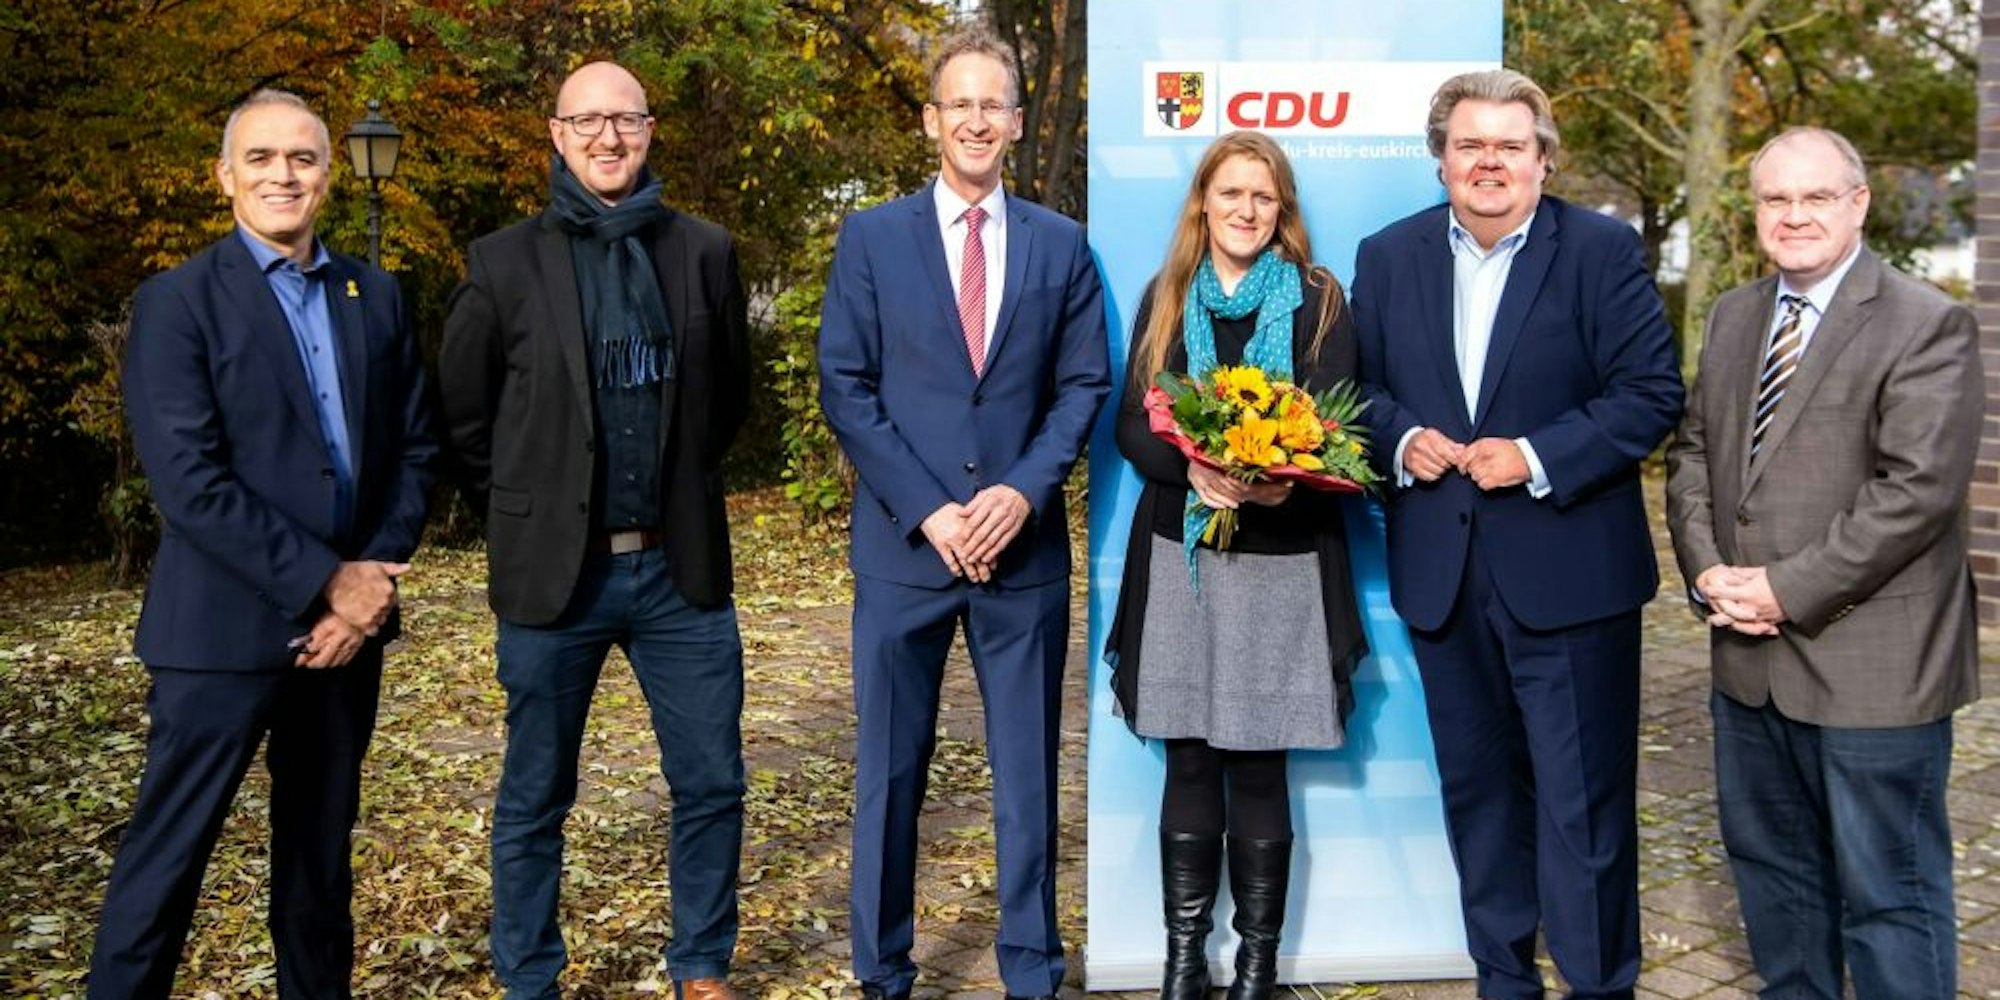 Der neue Vorstand der Kreis-CDU: Jürgen Görlich (Mitgliederbeauftragter), Ingo Pfennings, Detlef Seif (Vorsitzender), Birgit Braun-Näger, Klaus Voussem (alle drei stellvertretende Vorsitzende) und Kassierer Frank Diefenbach (v.l.n.r.).